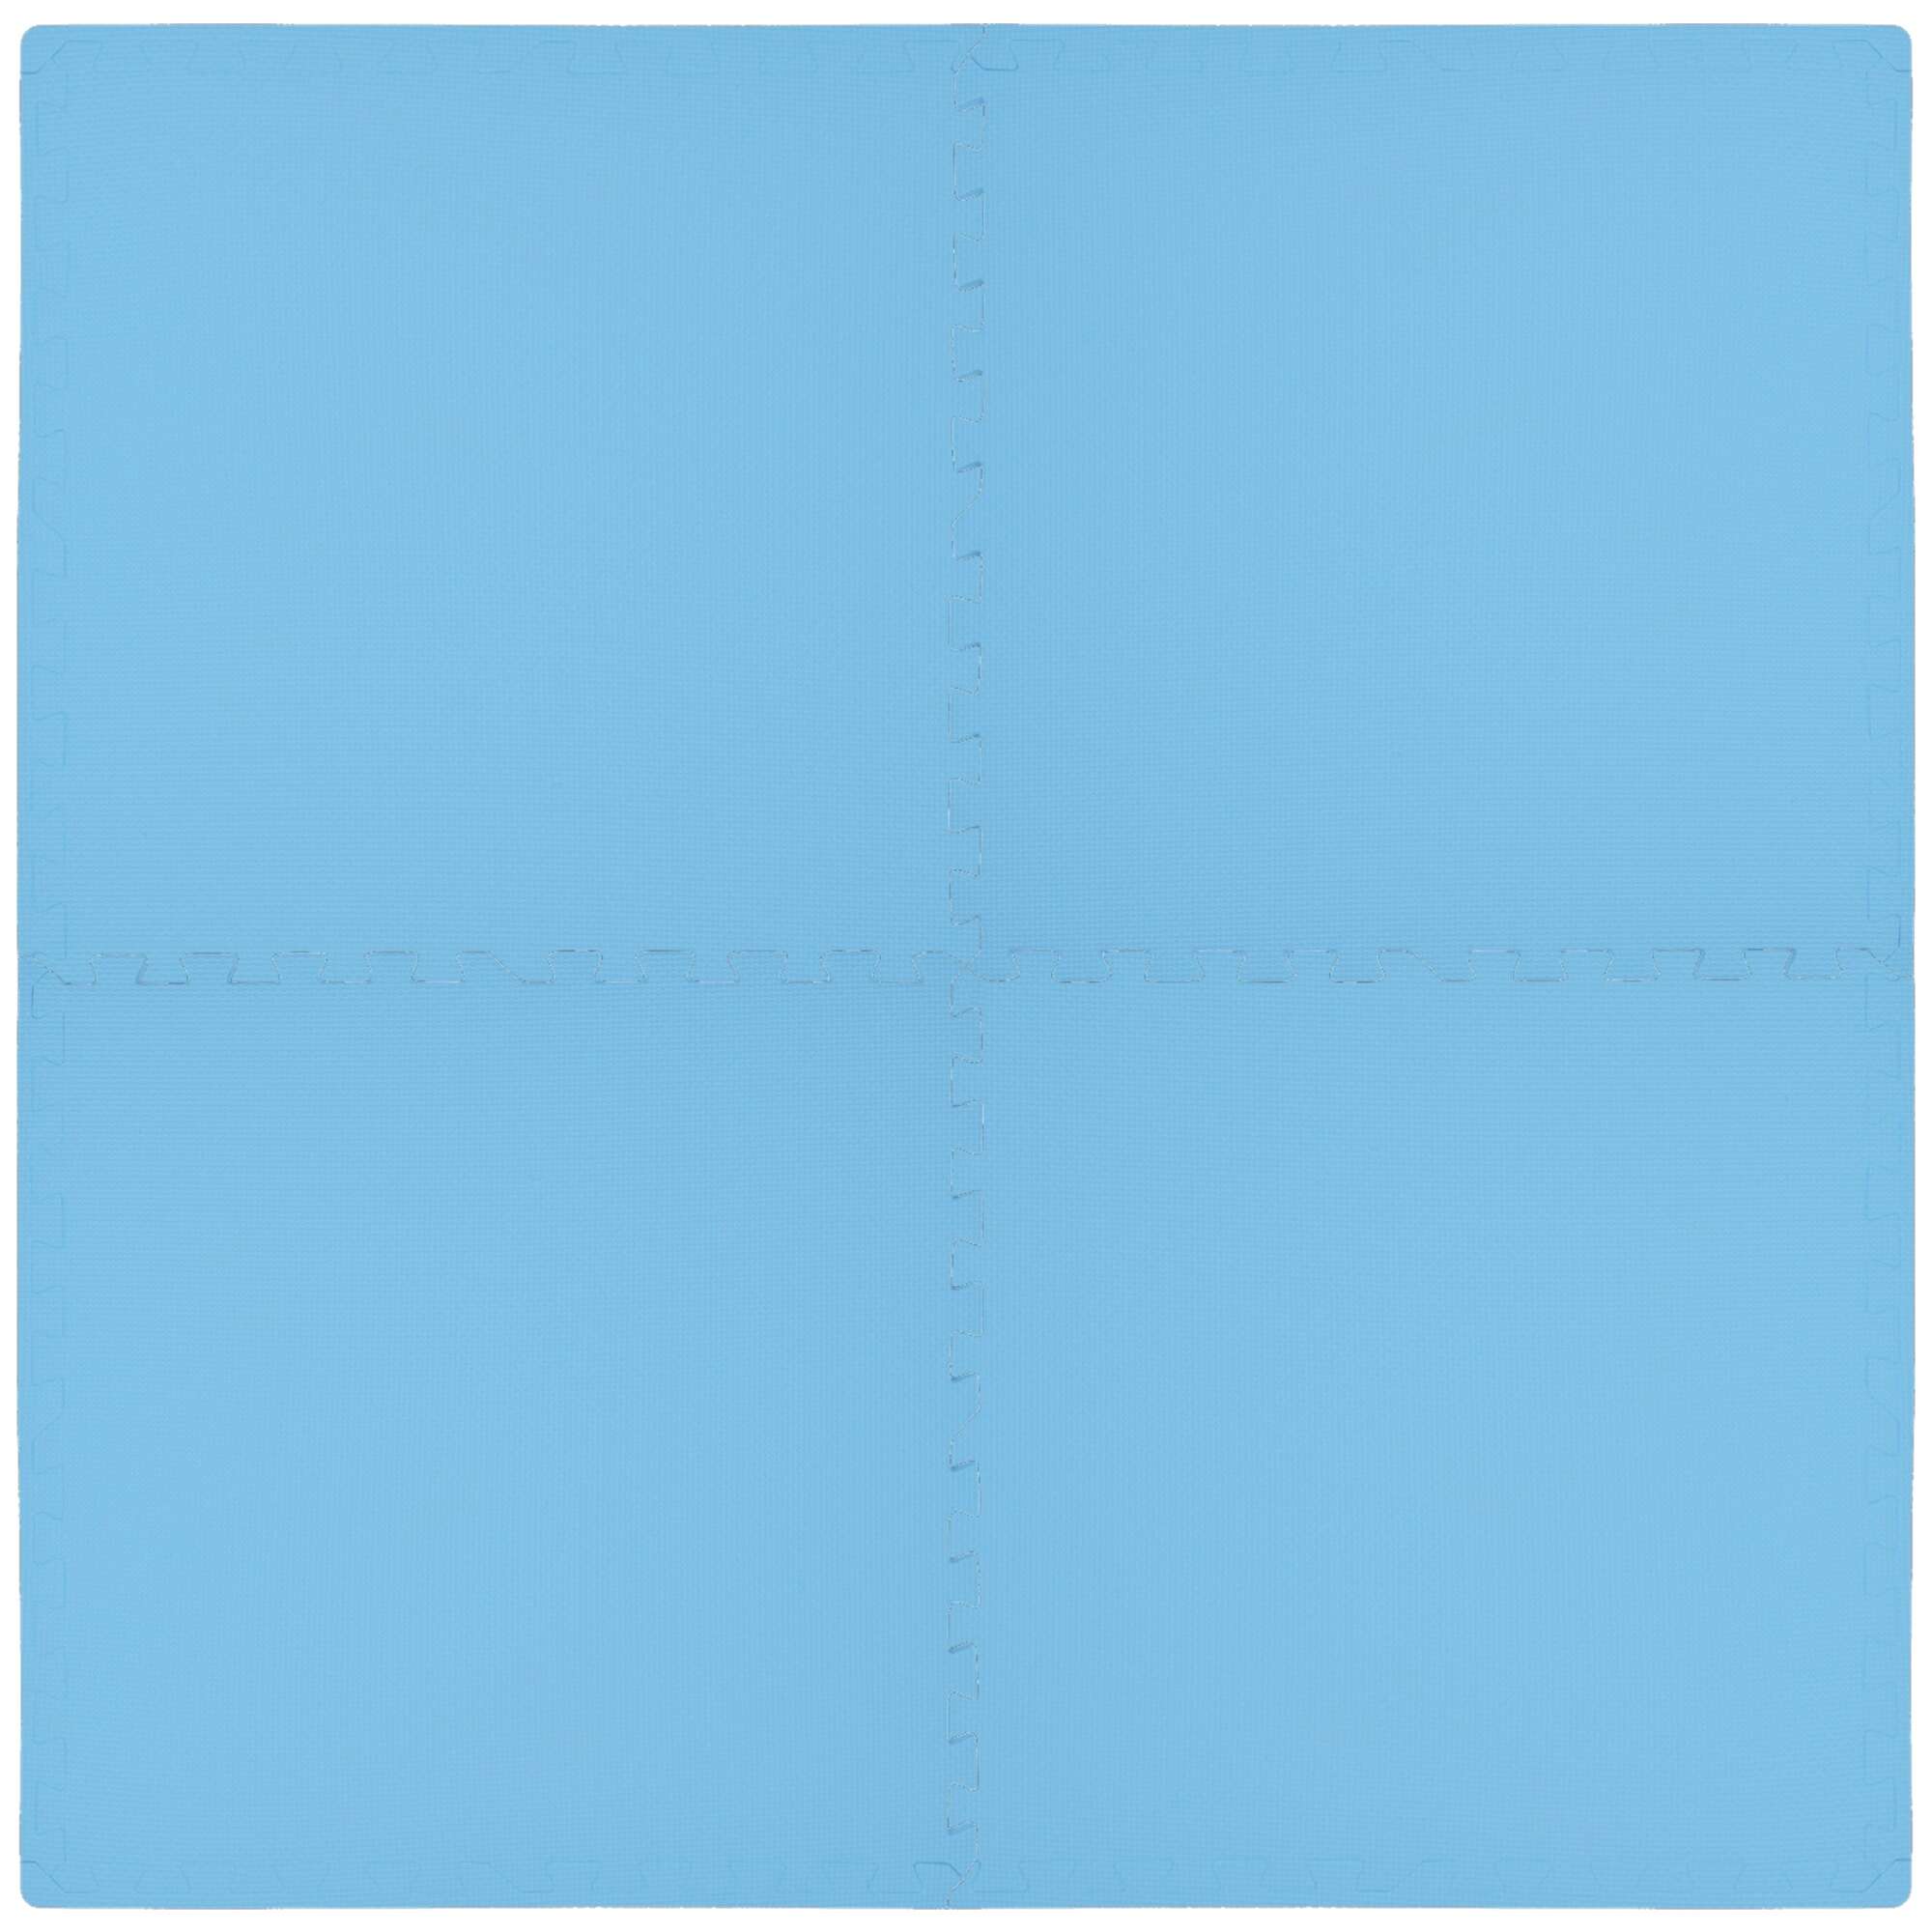 Mata piankowa podogowa Humbi 120x120 Due puzzle piankowe wodoodporne bezpieczne 4 szt. bkitny jasny niebieski